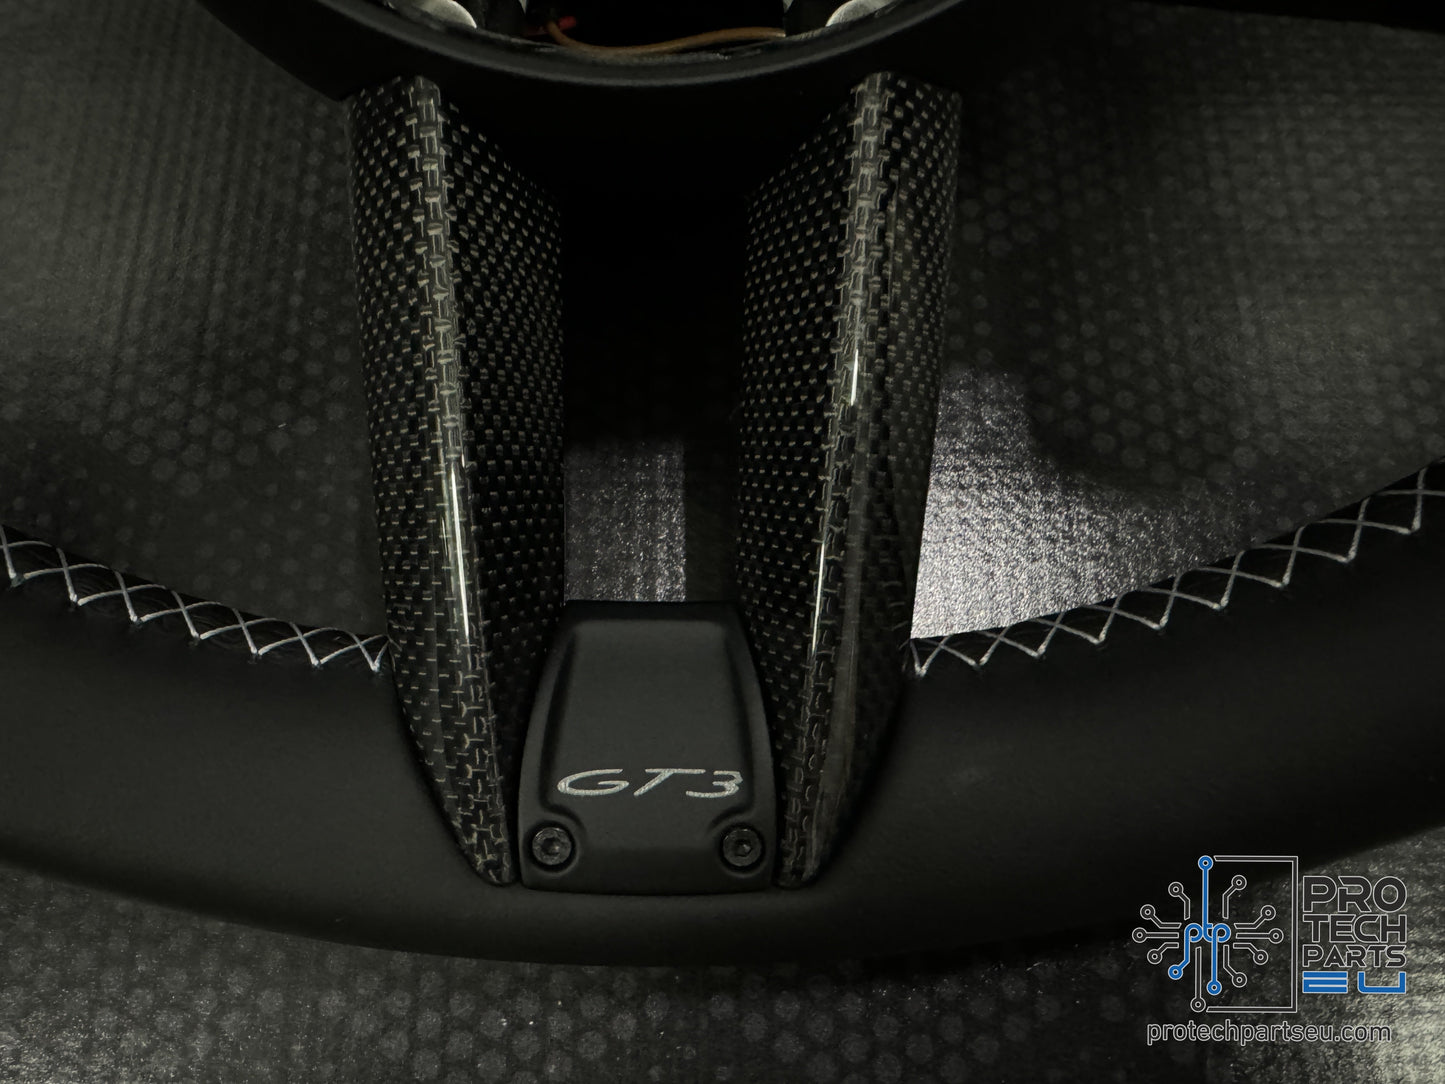 
                  
                    Porsche steering wheel UV stickers set Weissach RS
                  
                